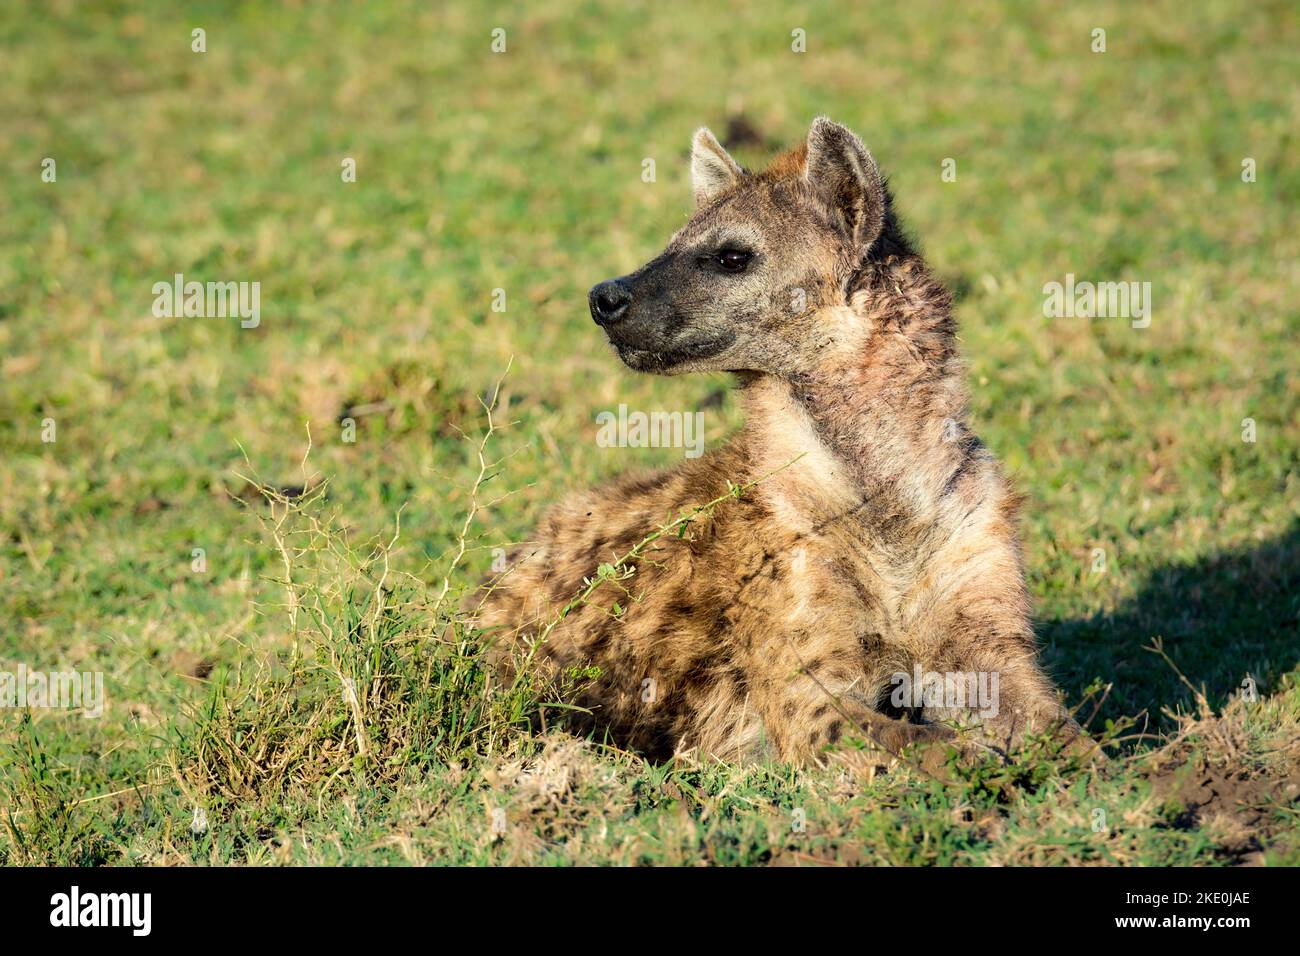 Spotted Hyena, Crocuta crocuta, réserve nationale de Masai Mara, Kenya, Afrique de l'est Banque D'Images